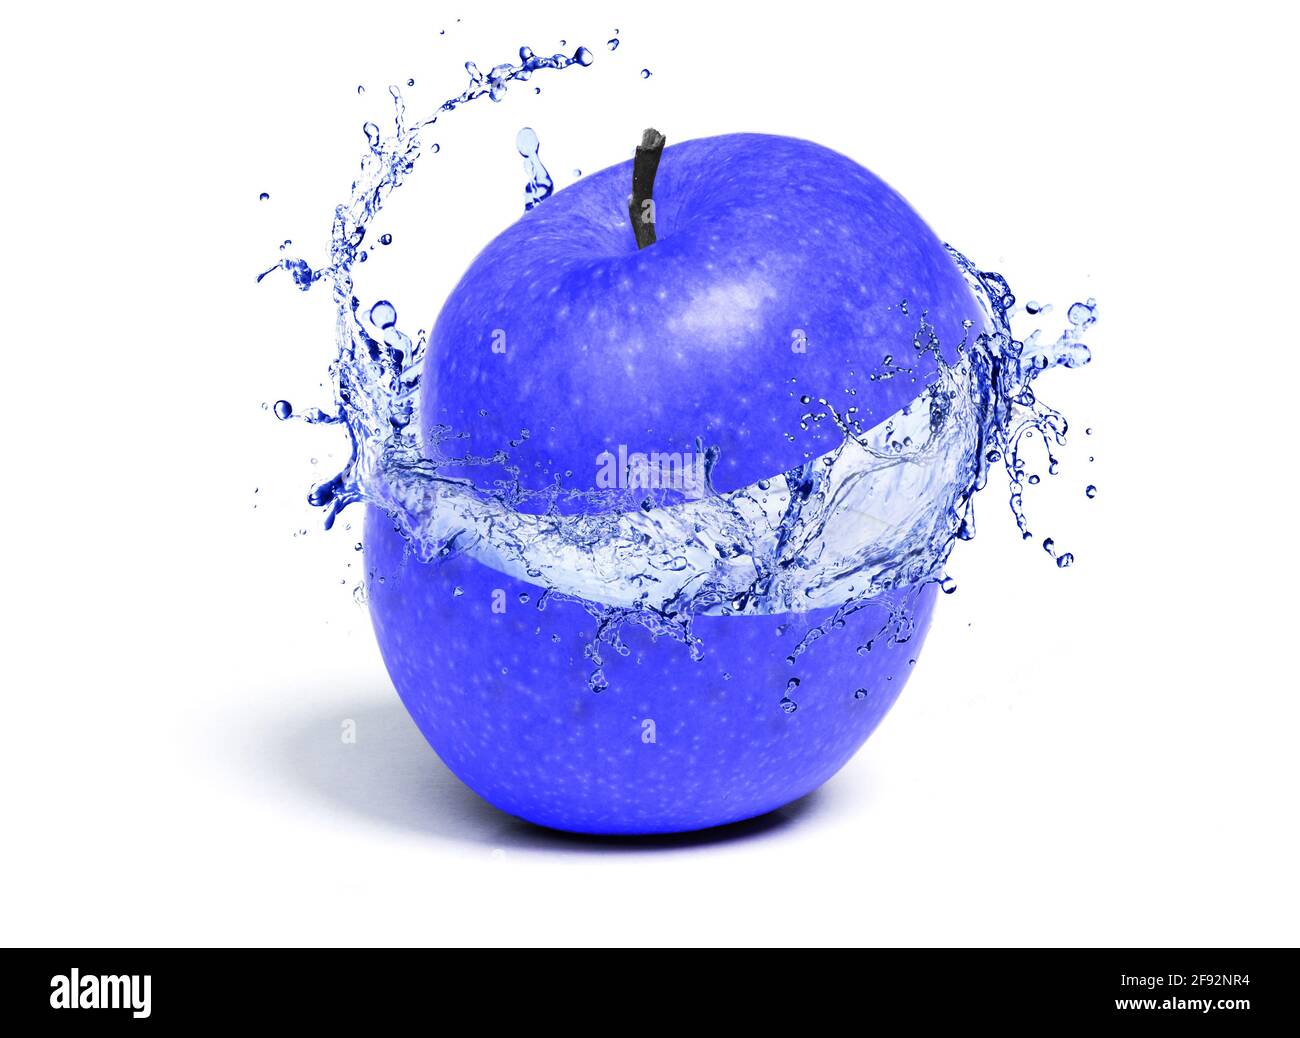 Pomme bleue juteuse avec éclaboussures juteuses de l'intérieur, isolée sur blanc Banque D'Images